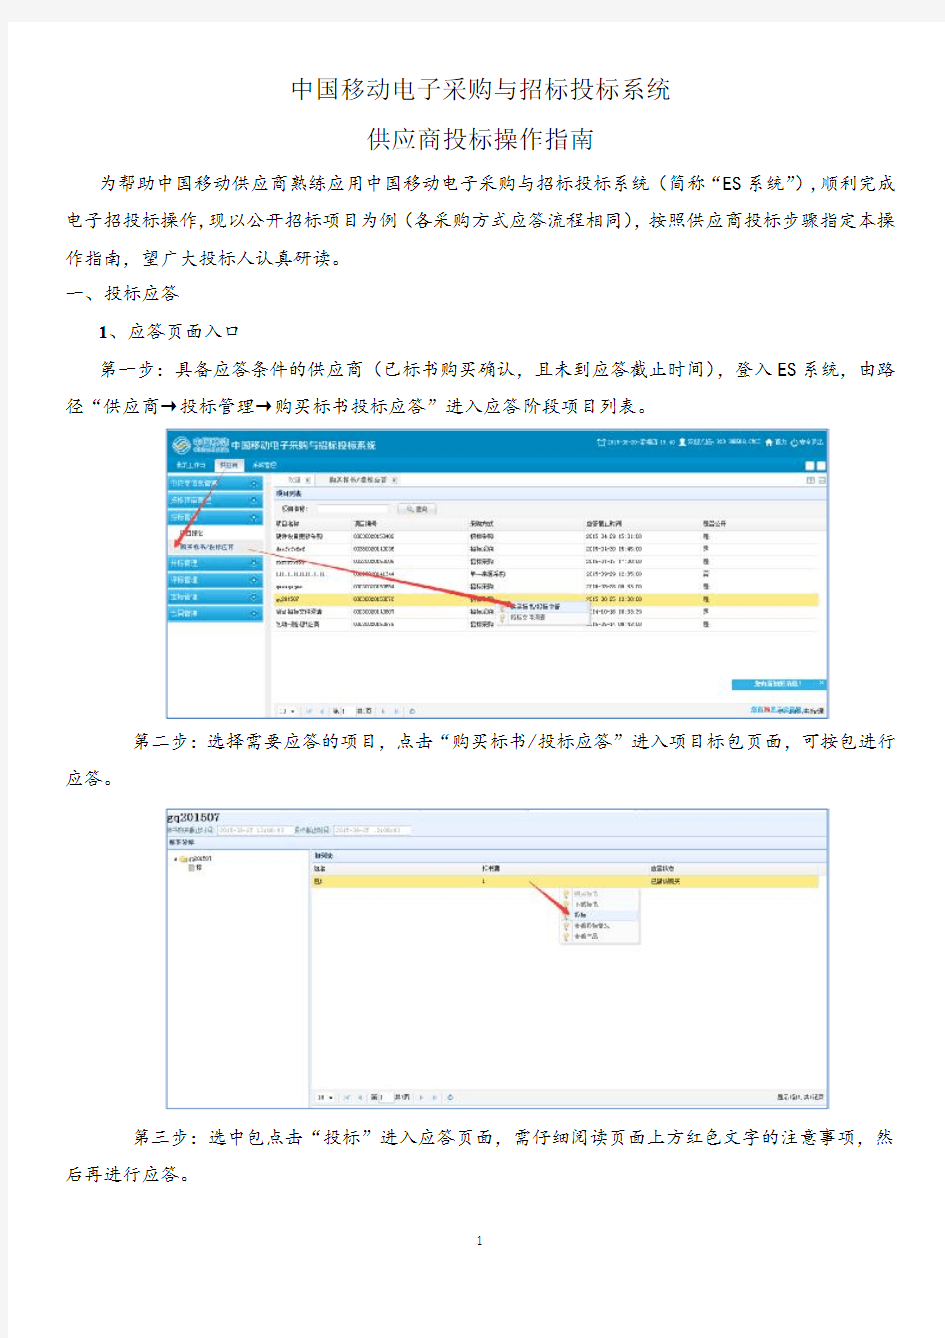 中国移动电子采购与招标投标系统供应商投标操作指南2.0